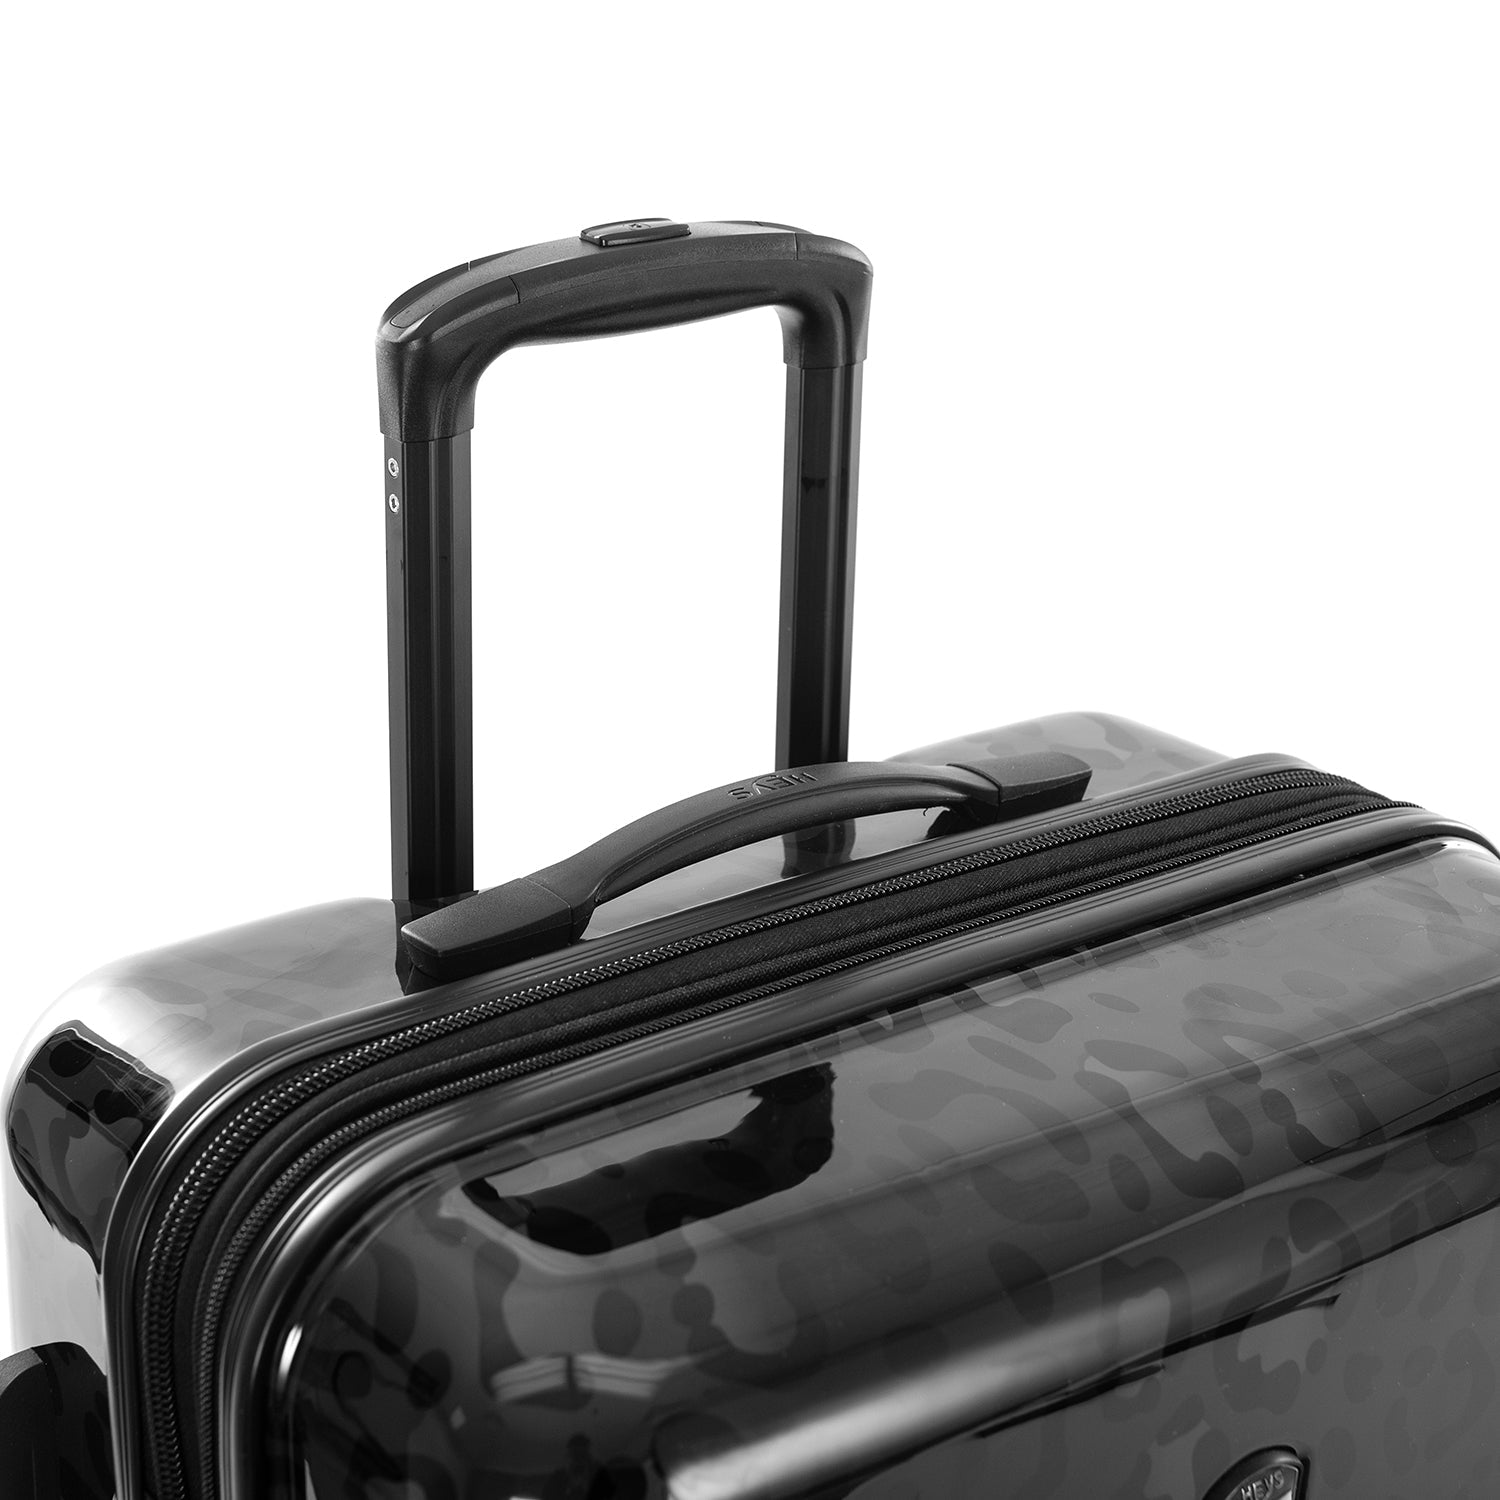 Black Leopard Fashion Spinner® 26" Luggage